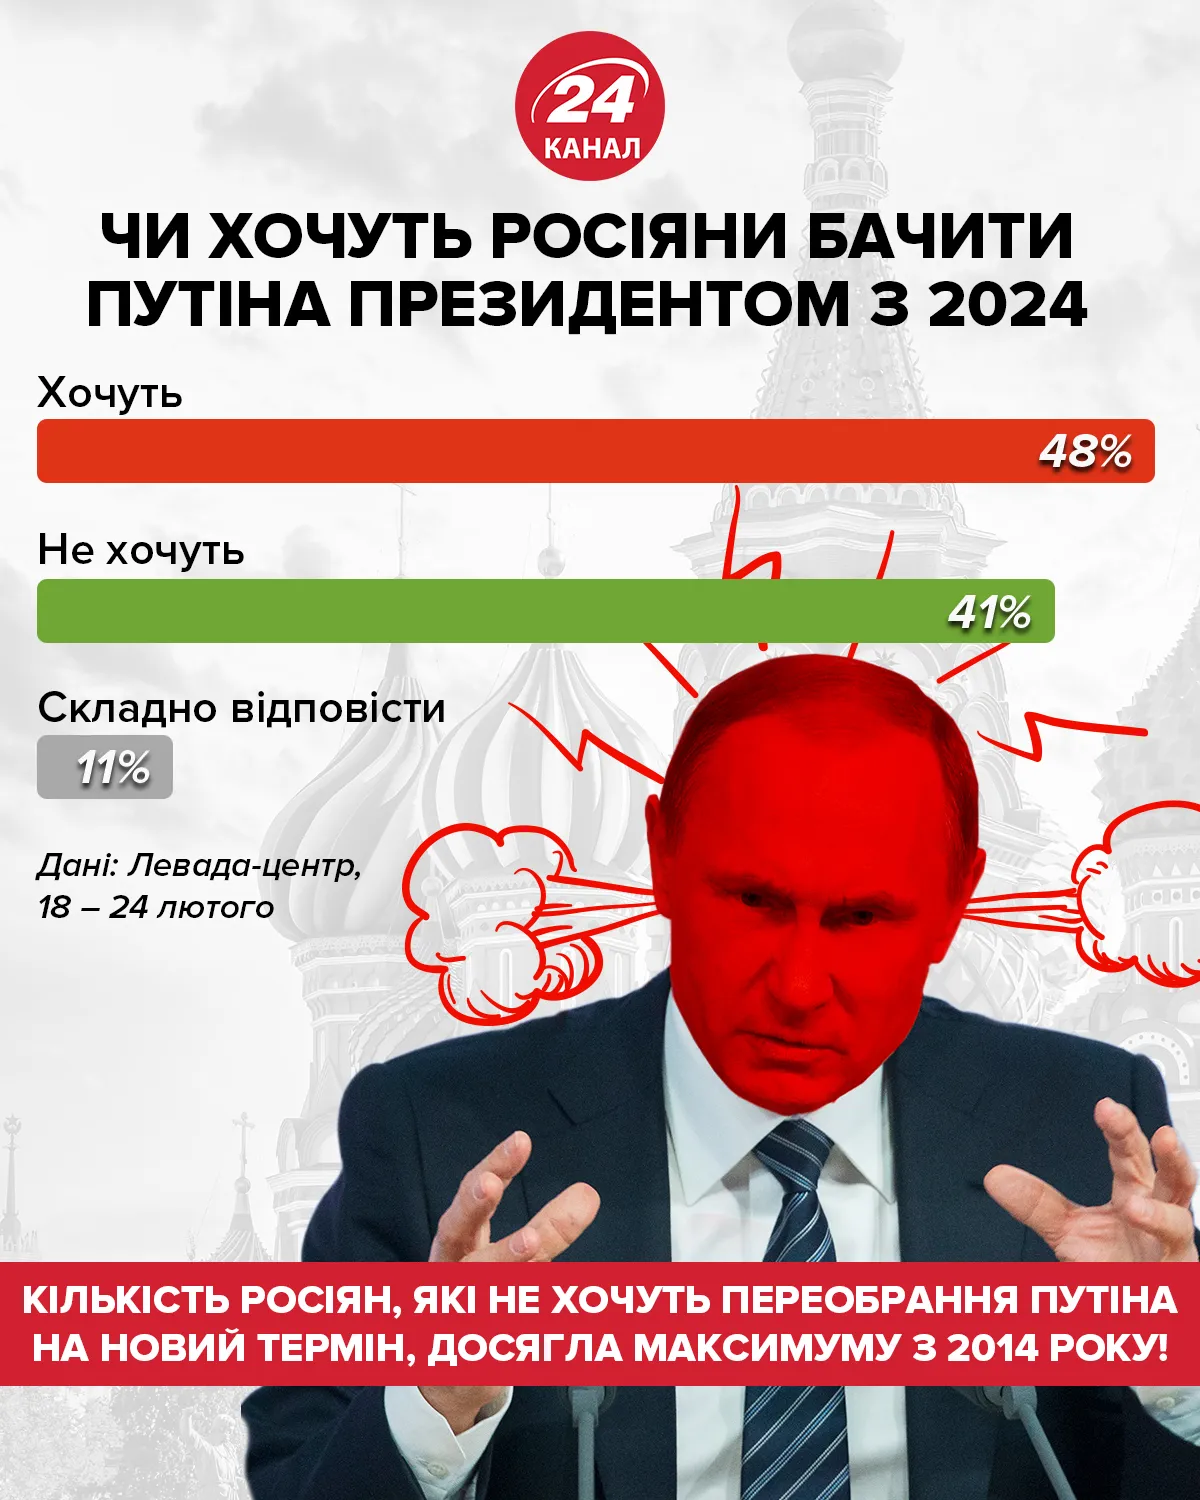 Хотят ли россияне видеть Путина президентом с 2024 / Инфографика 24 канала